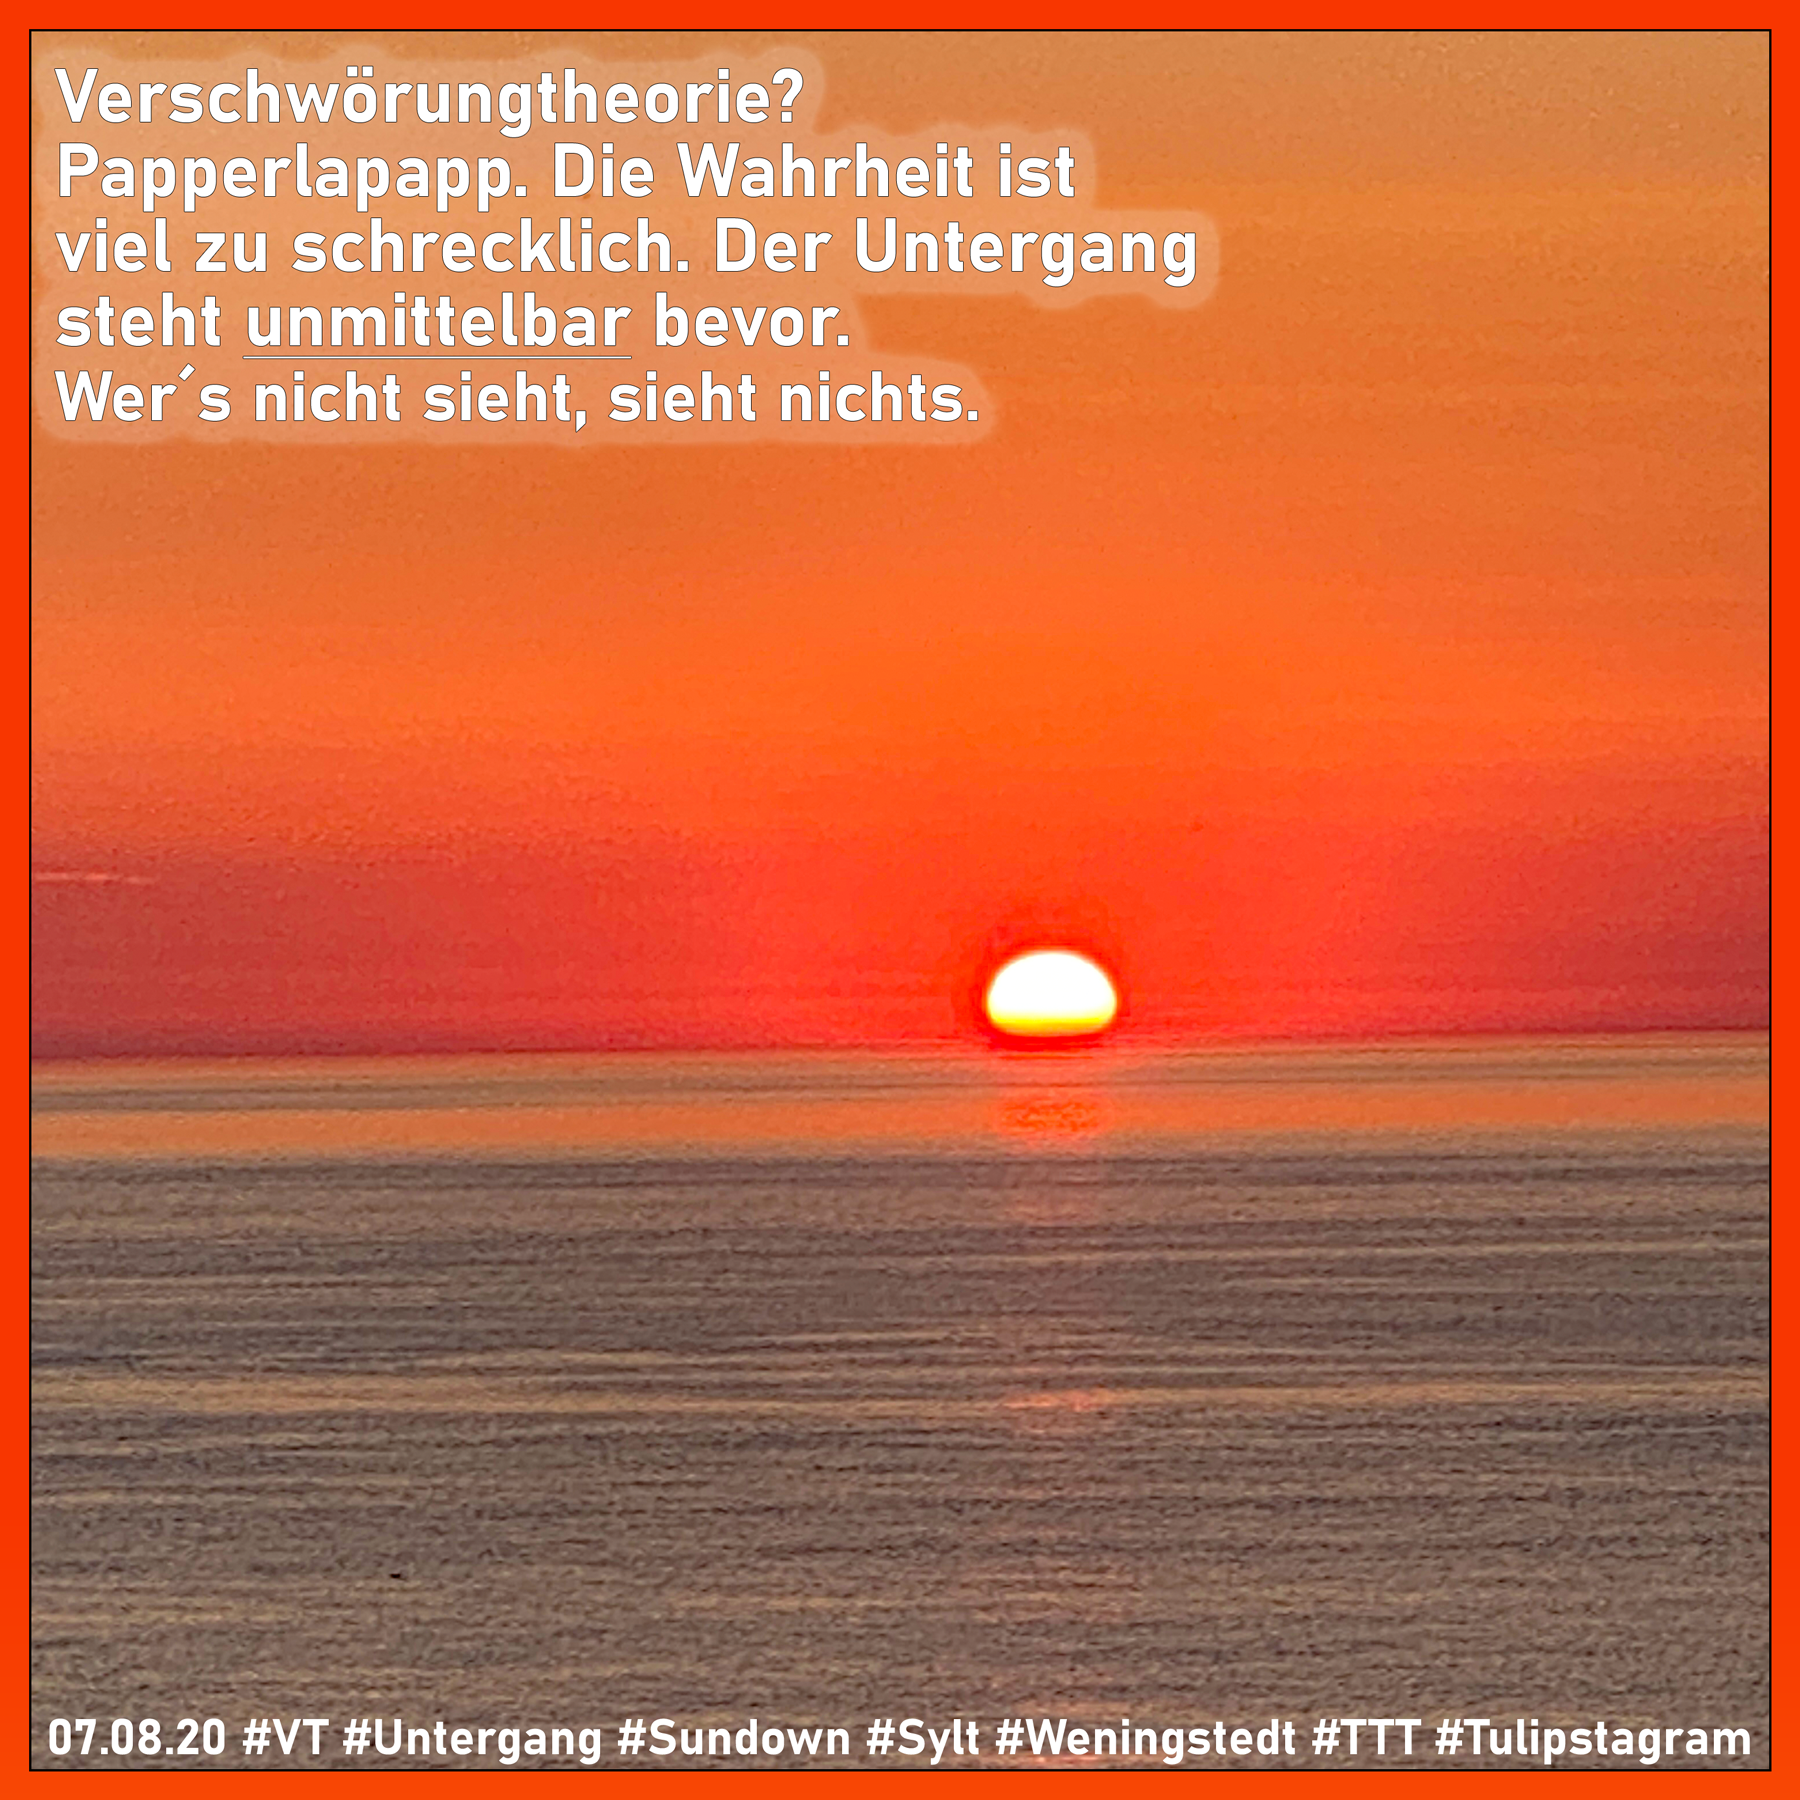 Obacht: Ich sag´s nicht gern, einer MUSS es ja tun. 07.08.20 #VT #Untergang #Sundown #Sylt #Weningstedt #TTT #Tulipstagram